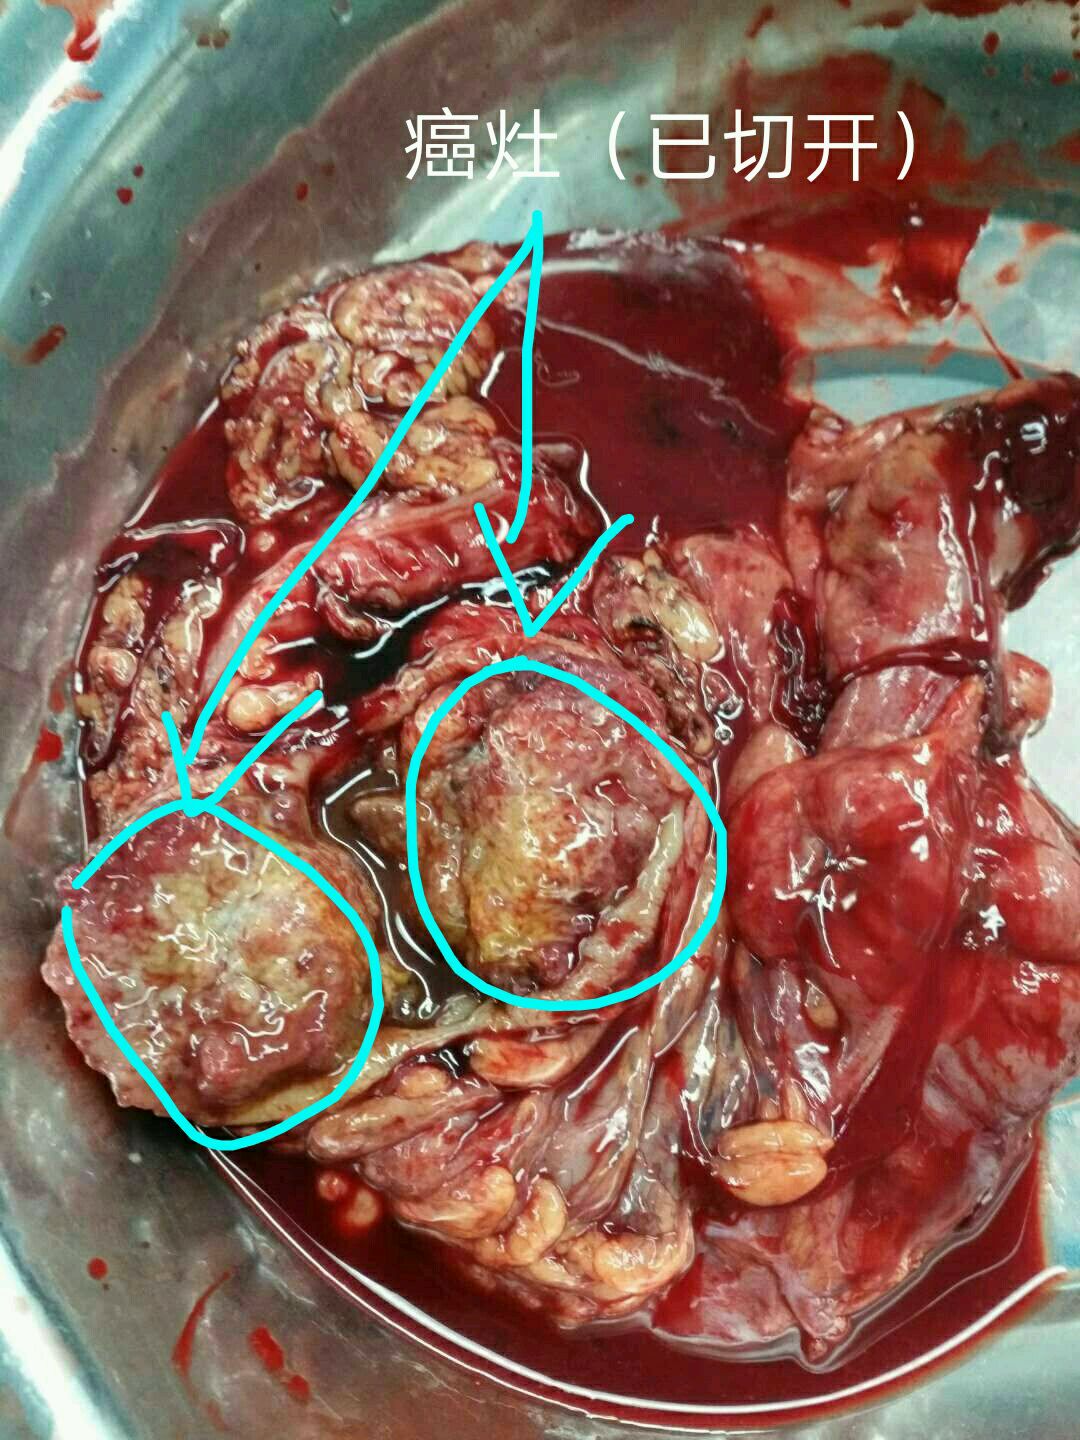 结肠肝曲癌,这是一位右中上腹反复疼痛,体重急剧减轻,大便潜血,肠梗阻